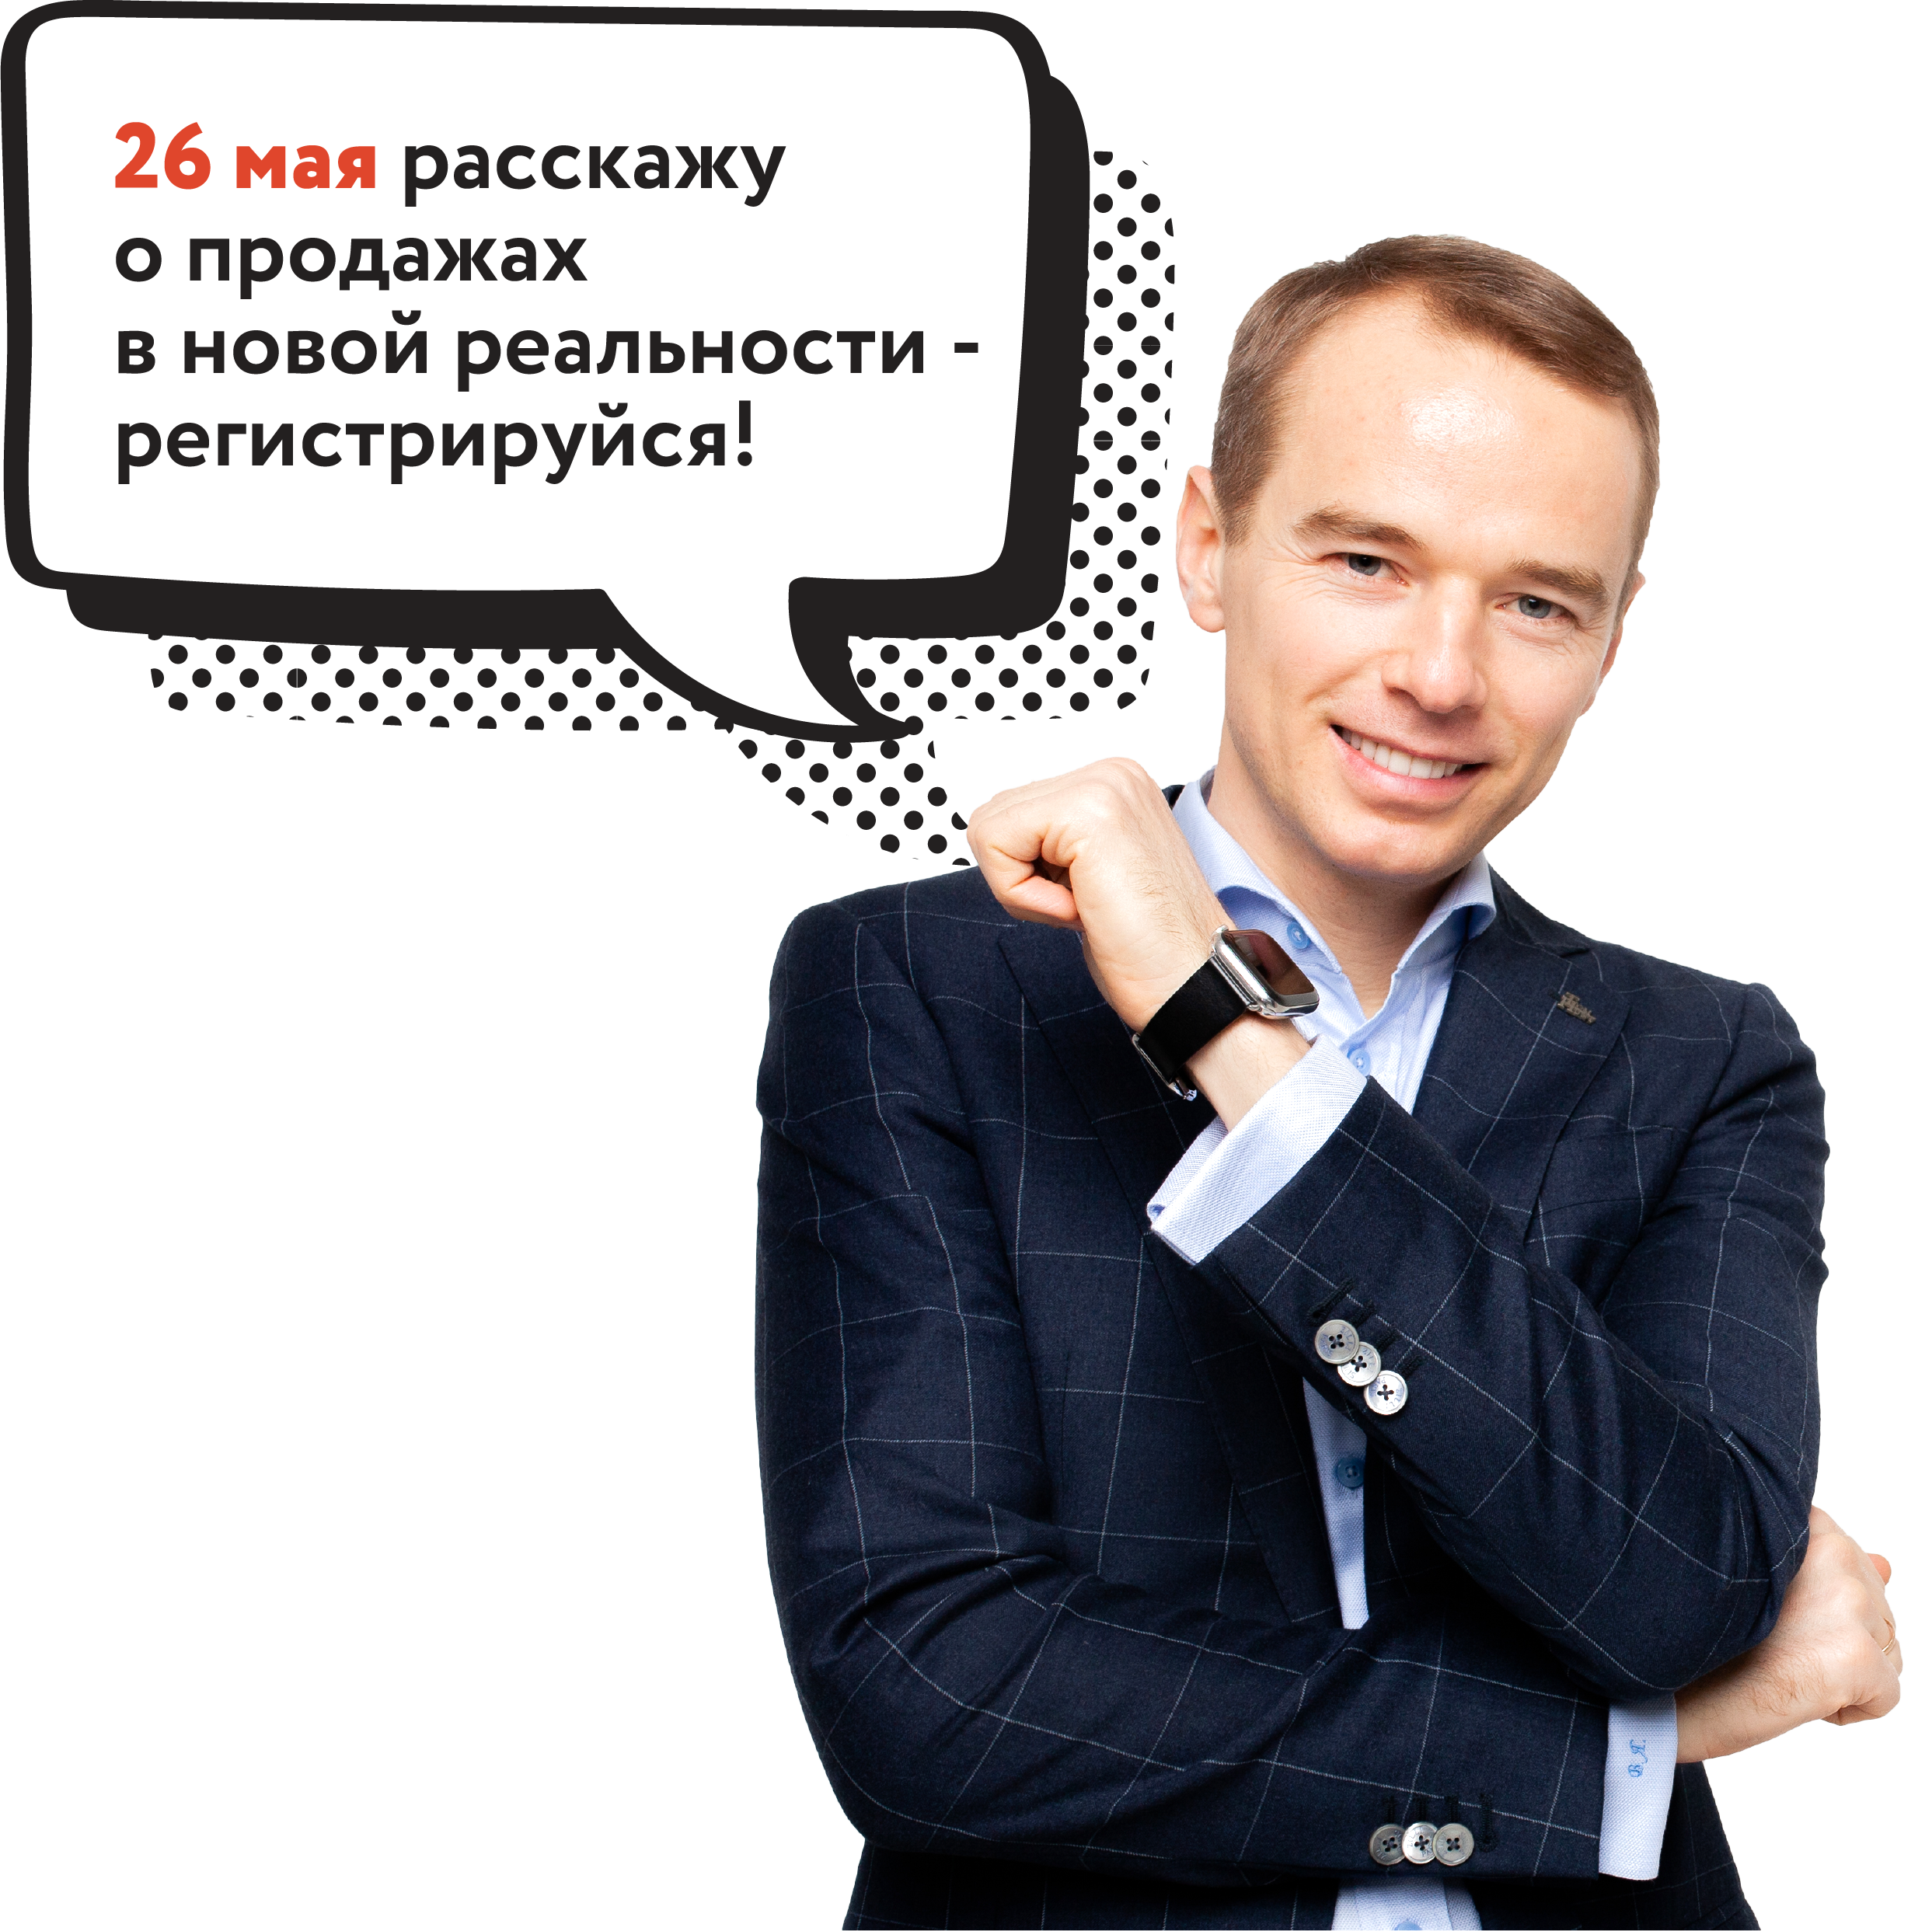 «Живой» мастер-класс от легенды продаж - Владимира Якубы!